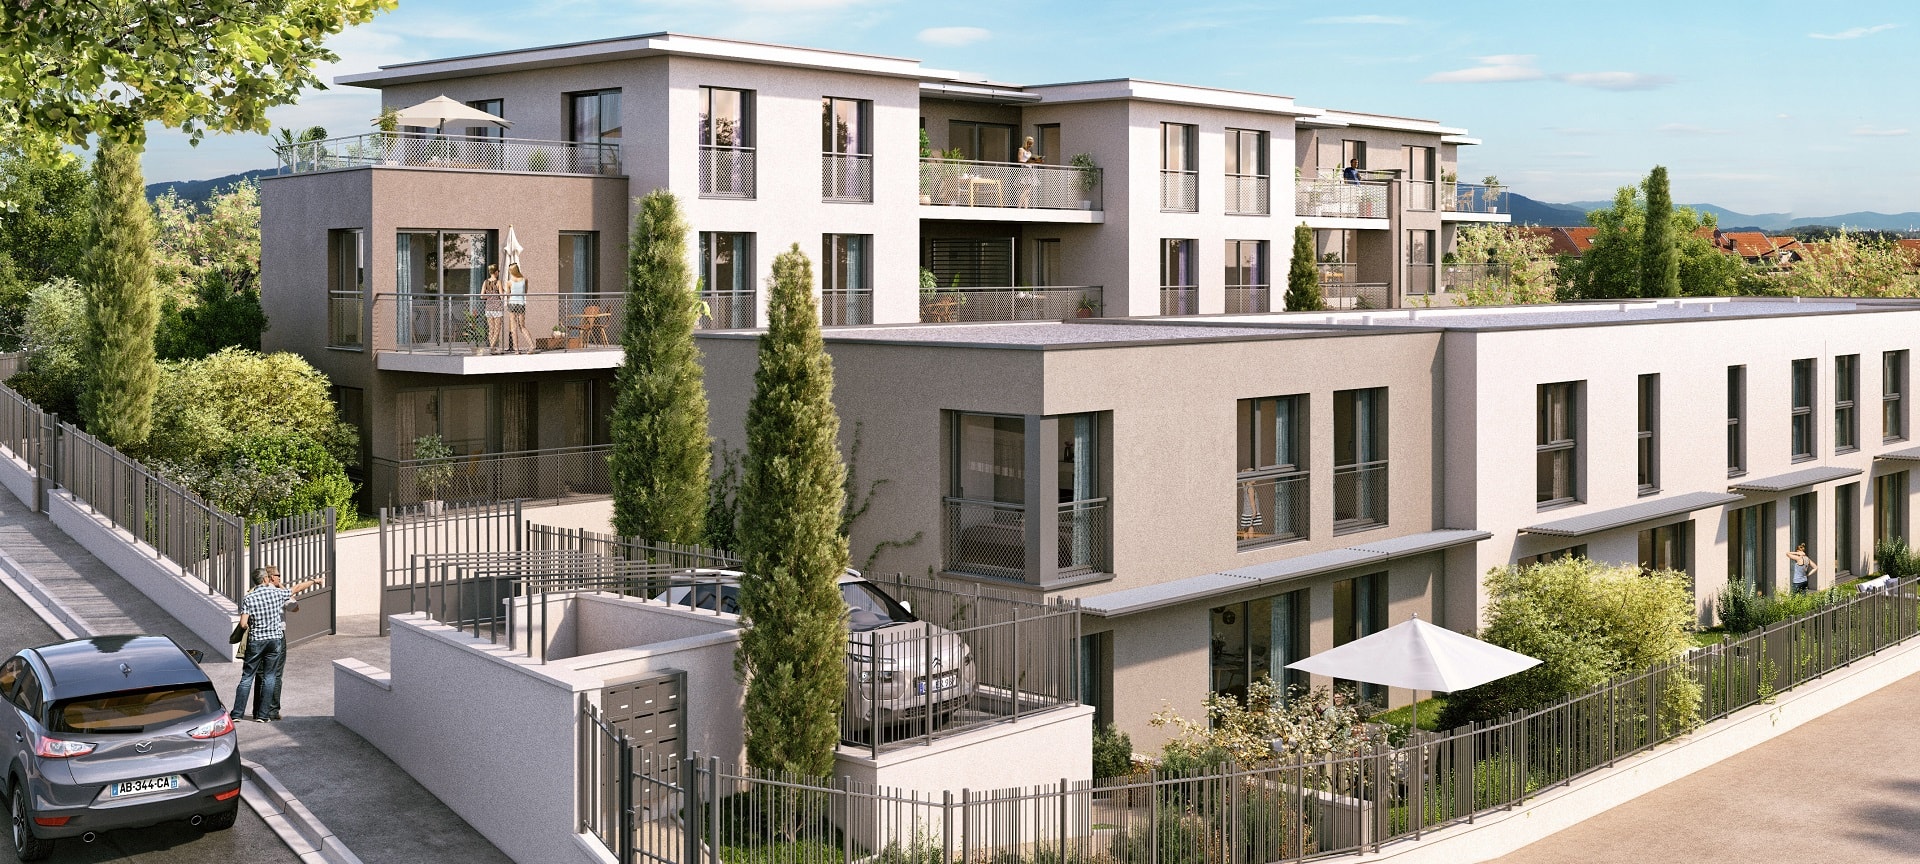 Programme immobilier EDE2 appartement à Bandol (83150) Perchée sur les hauteurs de Bandol